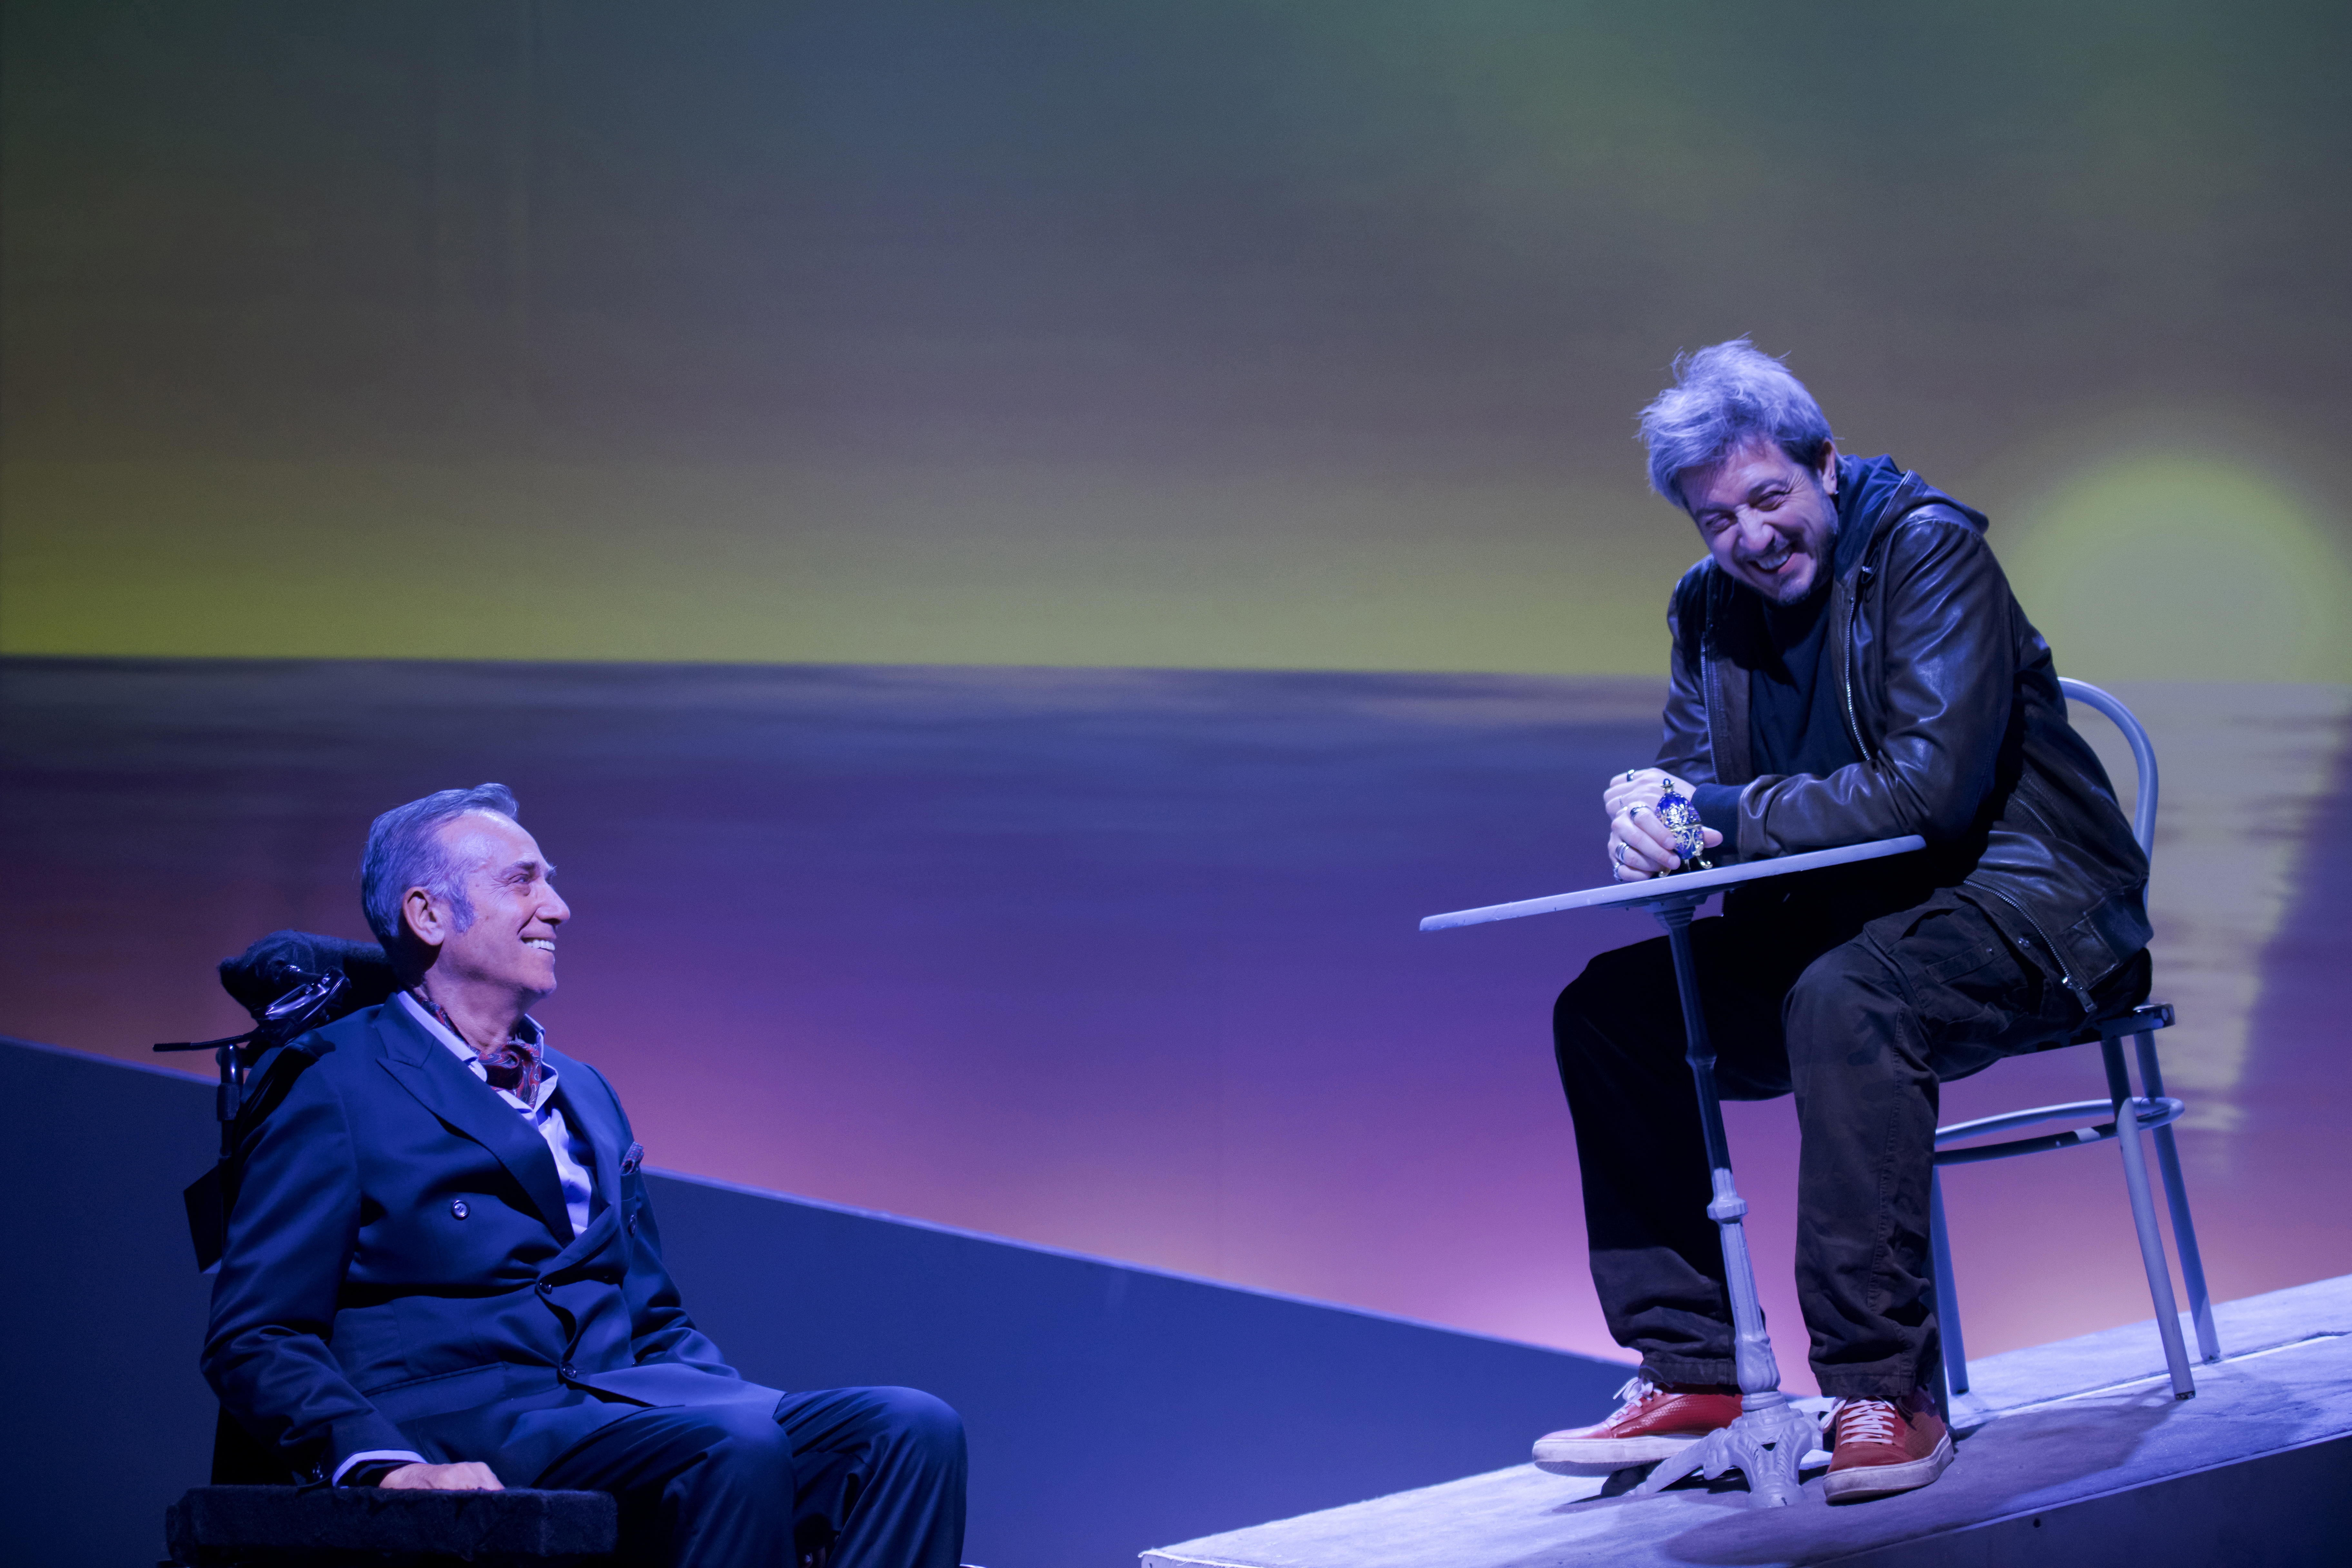 Al Teatro di Alba, mercoledì 17 aprile, tutto esaurito per lo spettacolo “Quasi amici” con Massimo Ghini e Paolo Ruffini